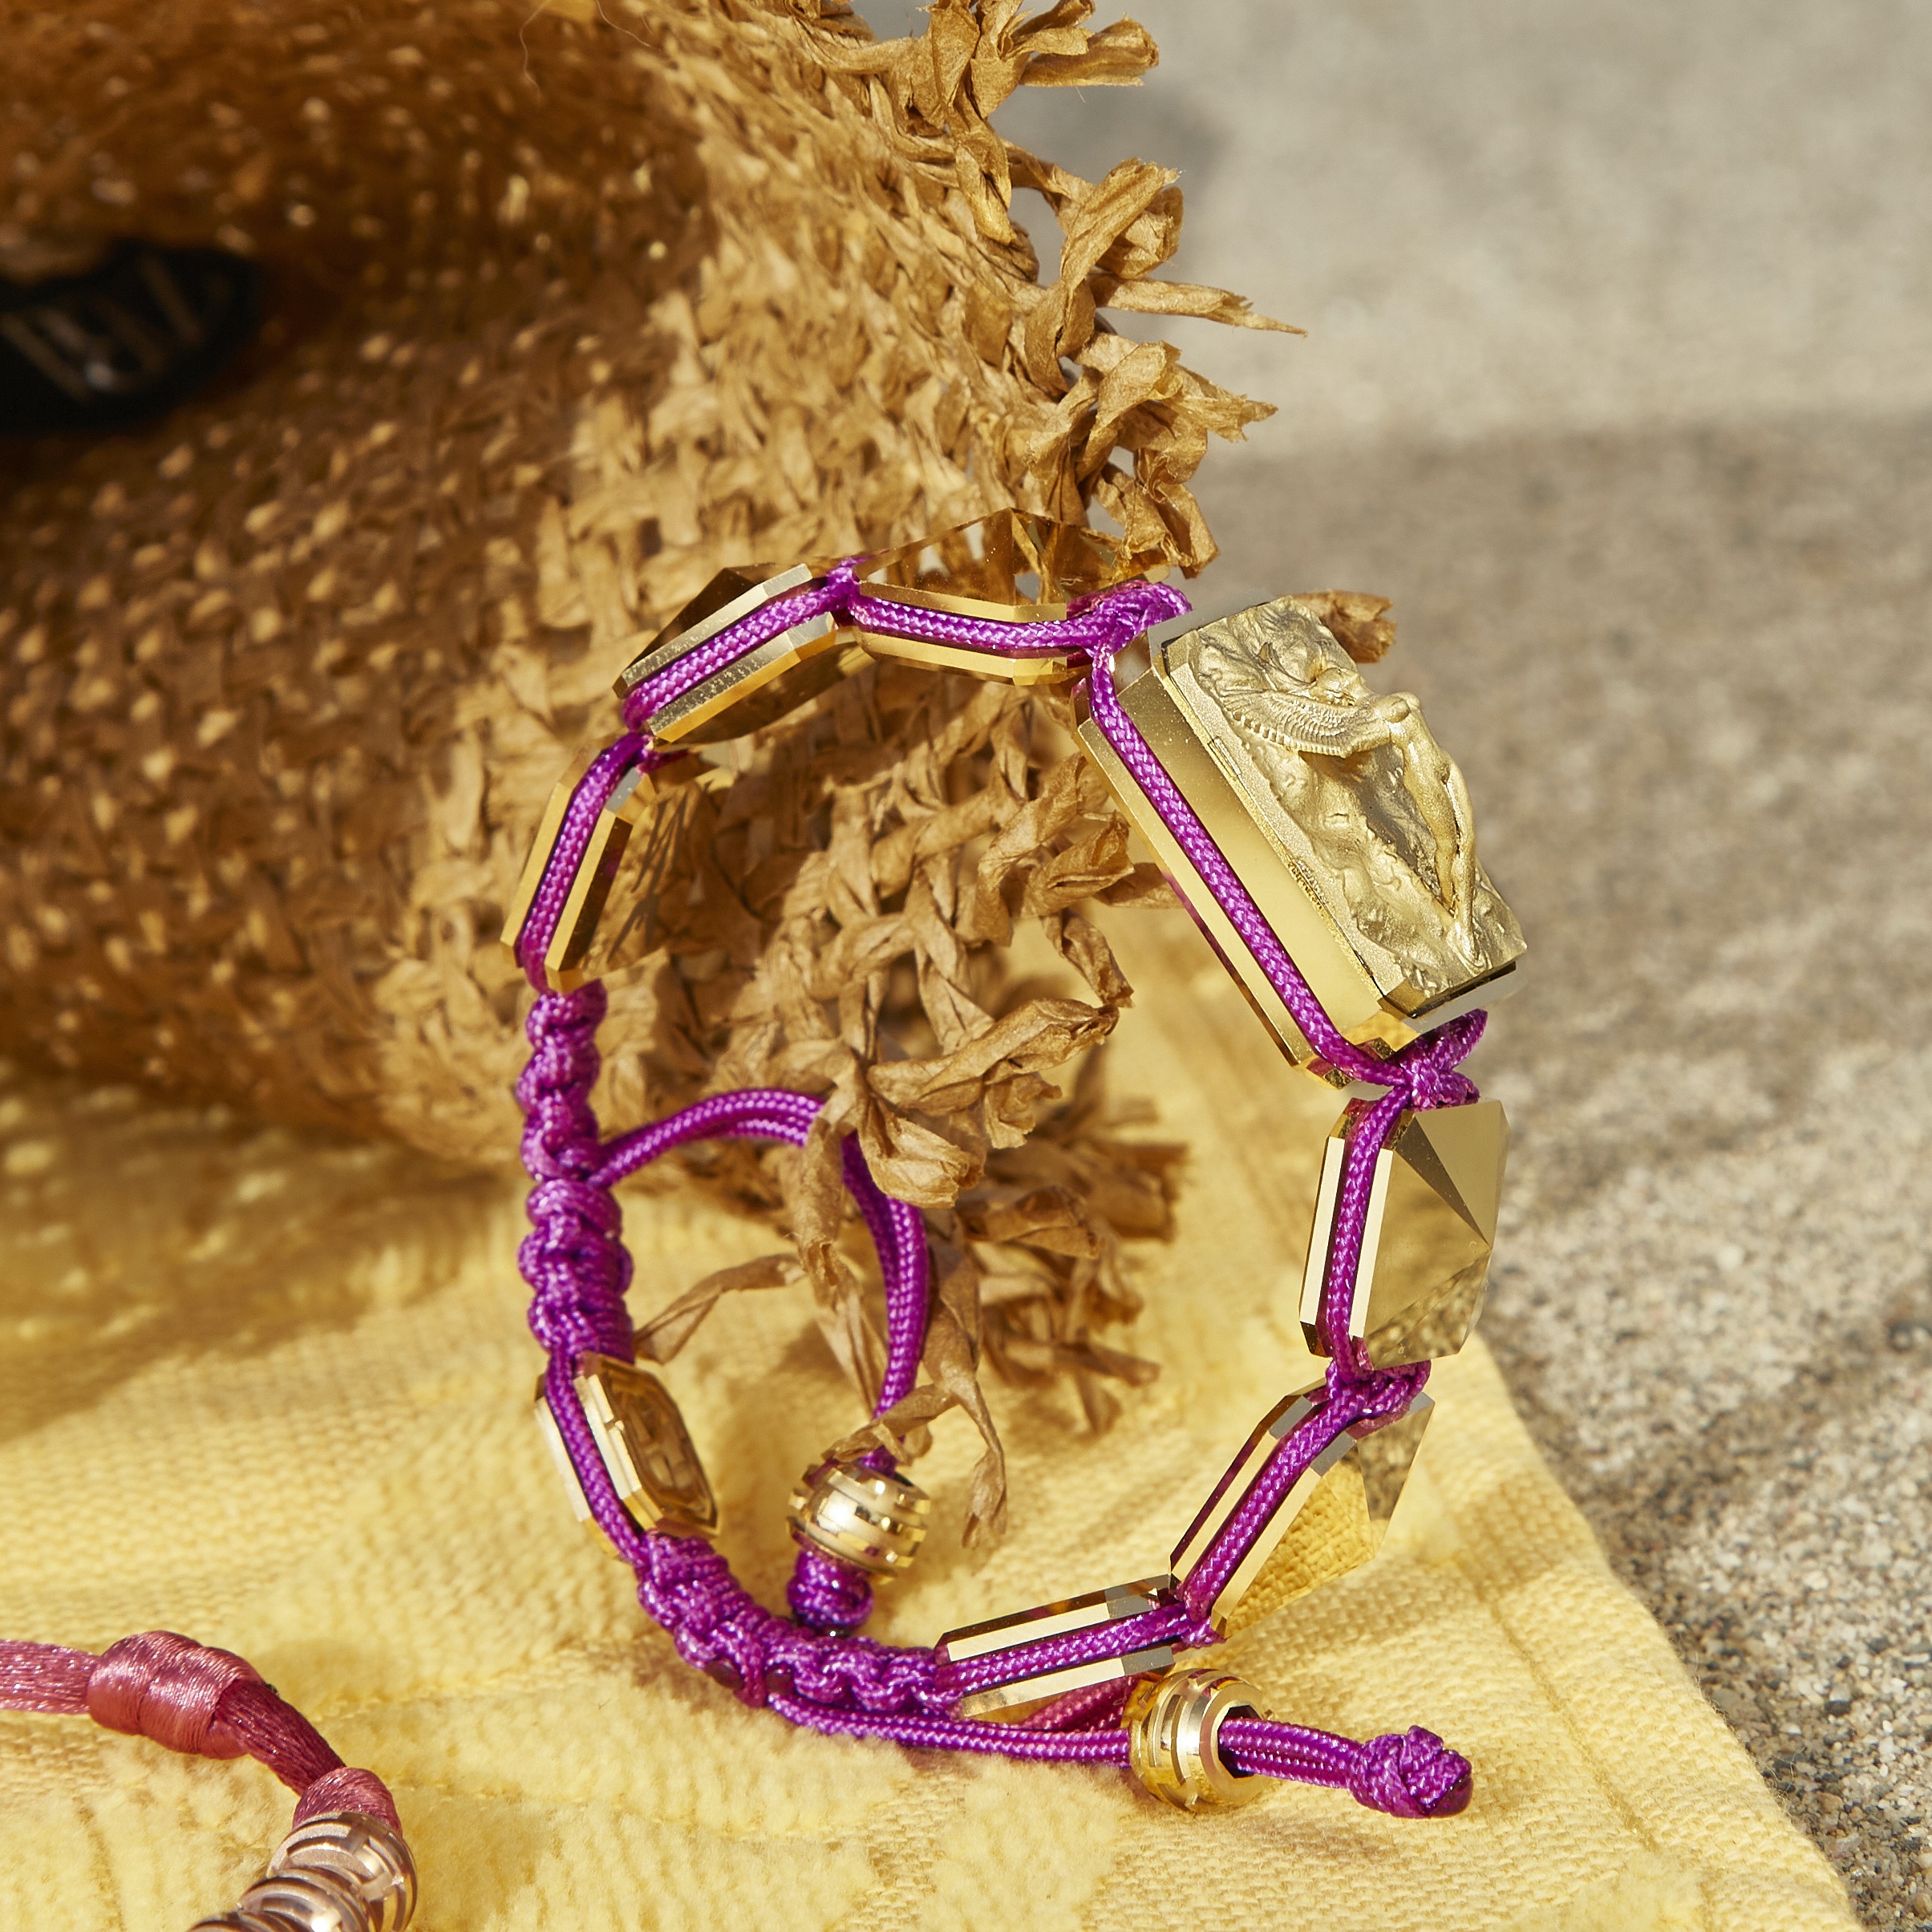 Pulsera Proud Of You con cerámica y escultura acabadas en Oro Amarillo de 18k. Hilo violeta.